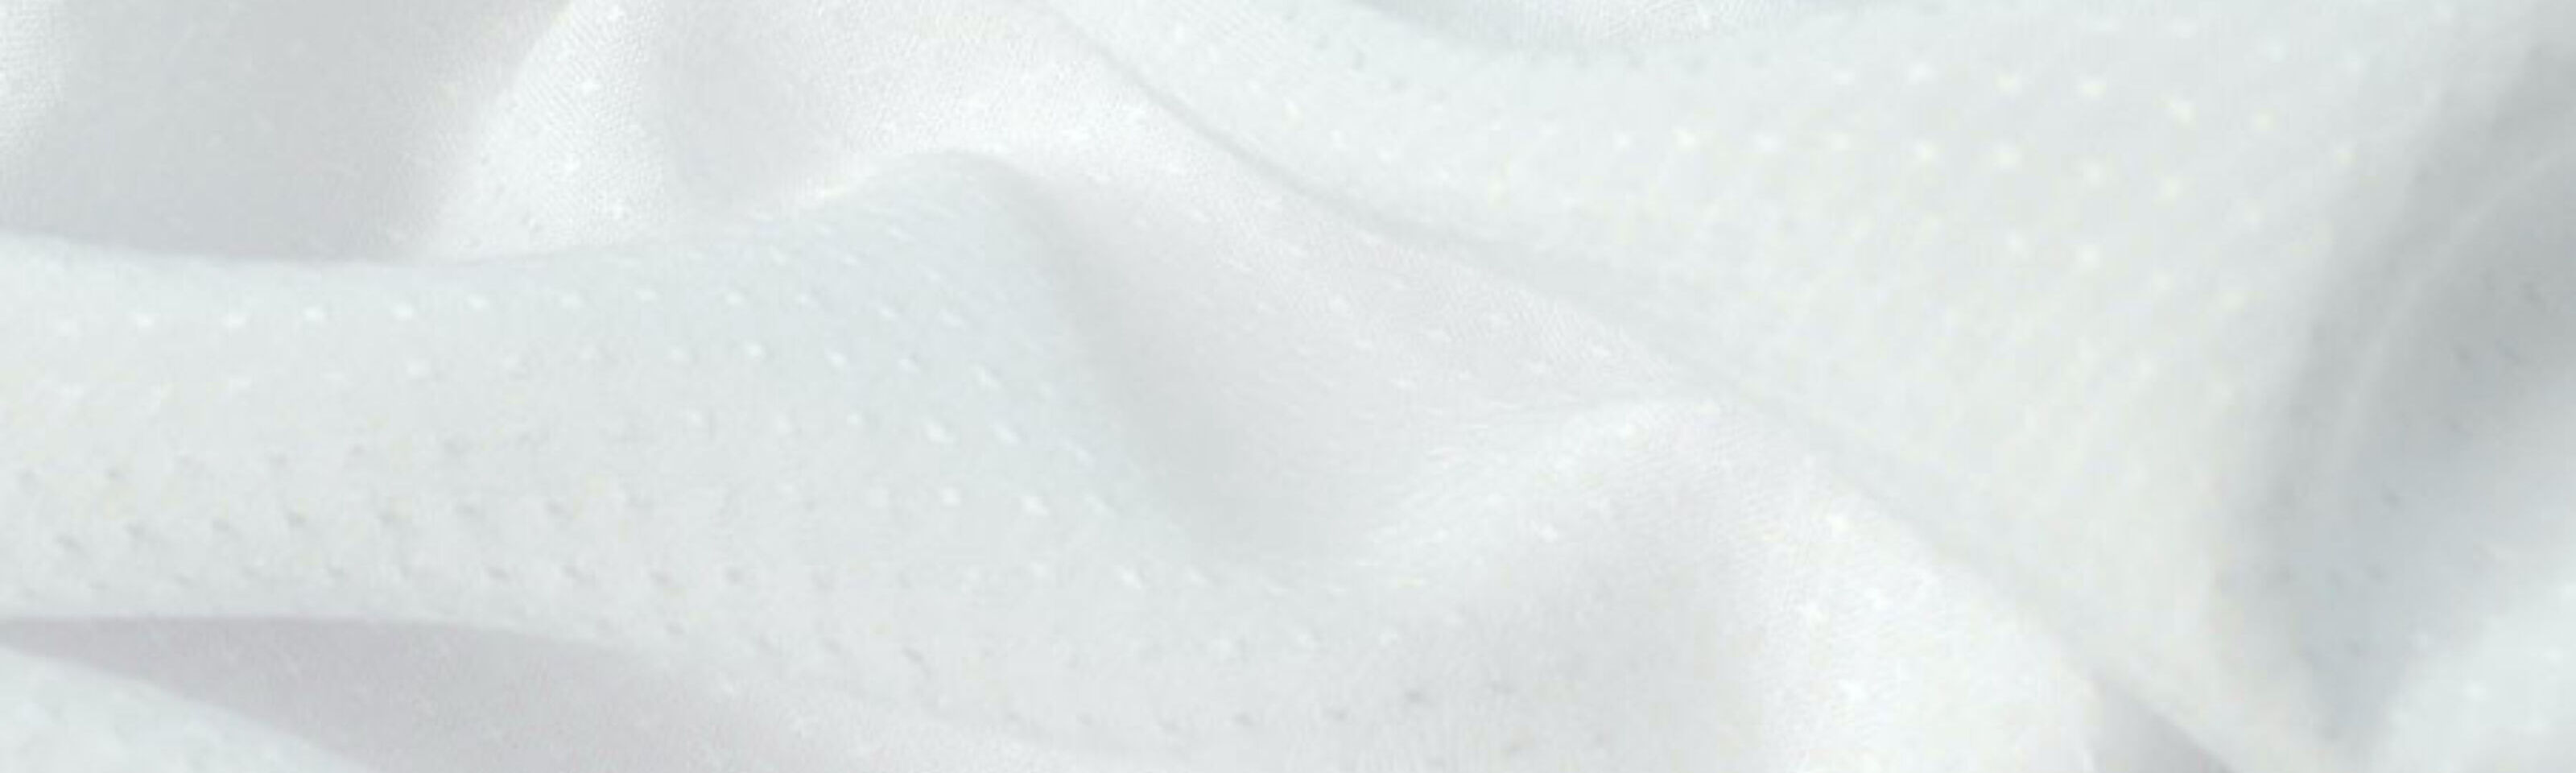 Dobby-White-Cotton-Shirting-Fabric-cu